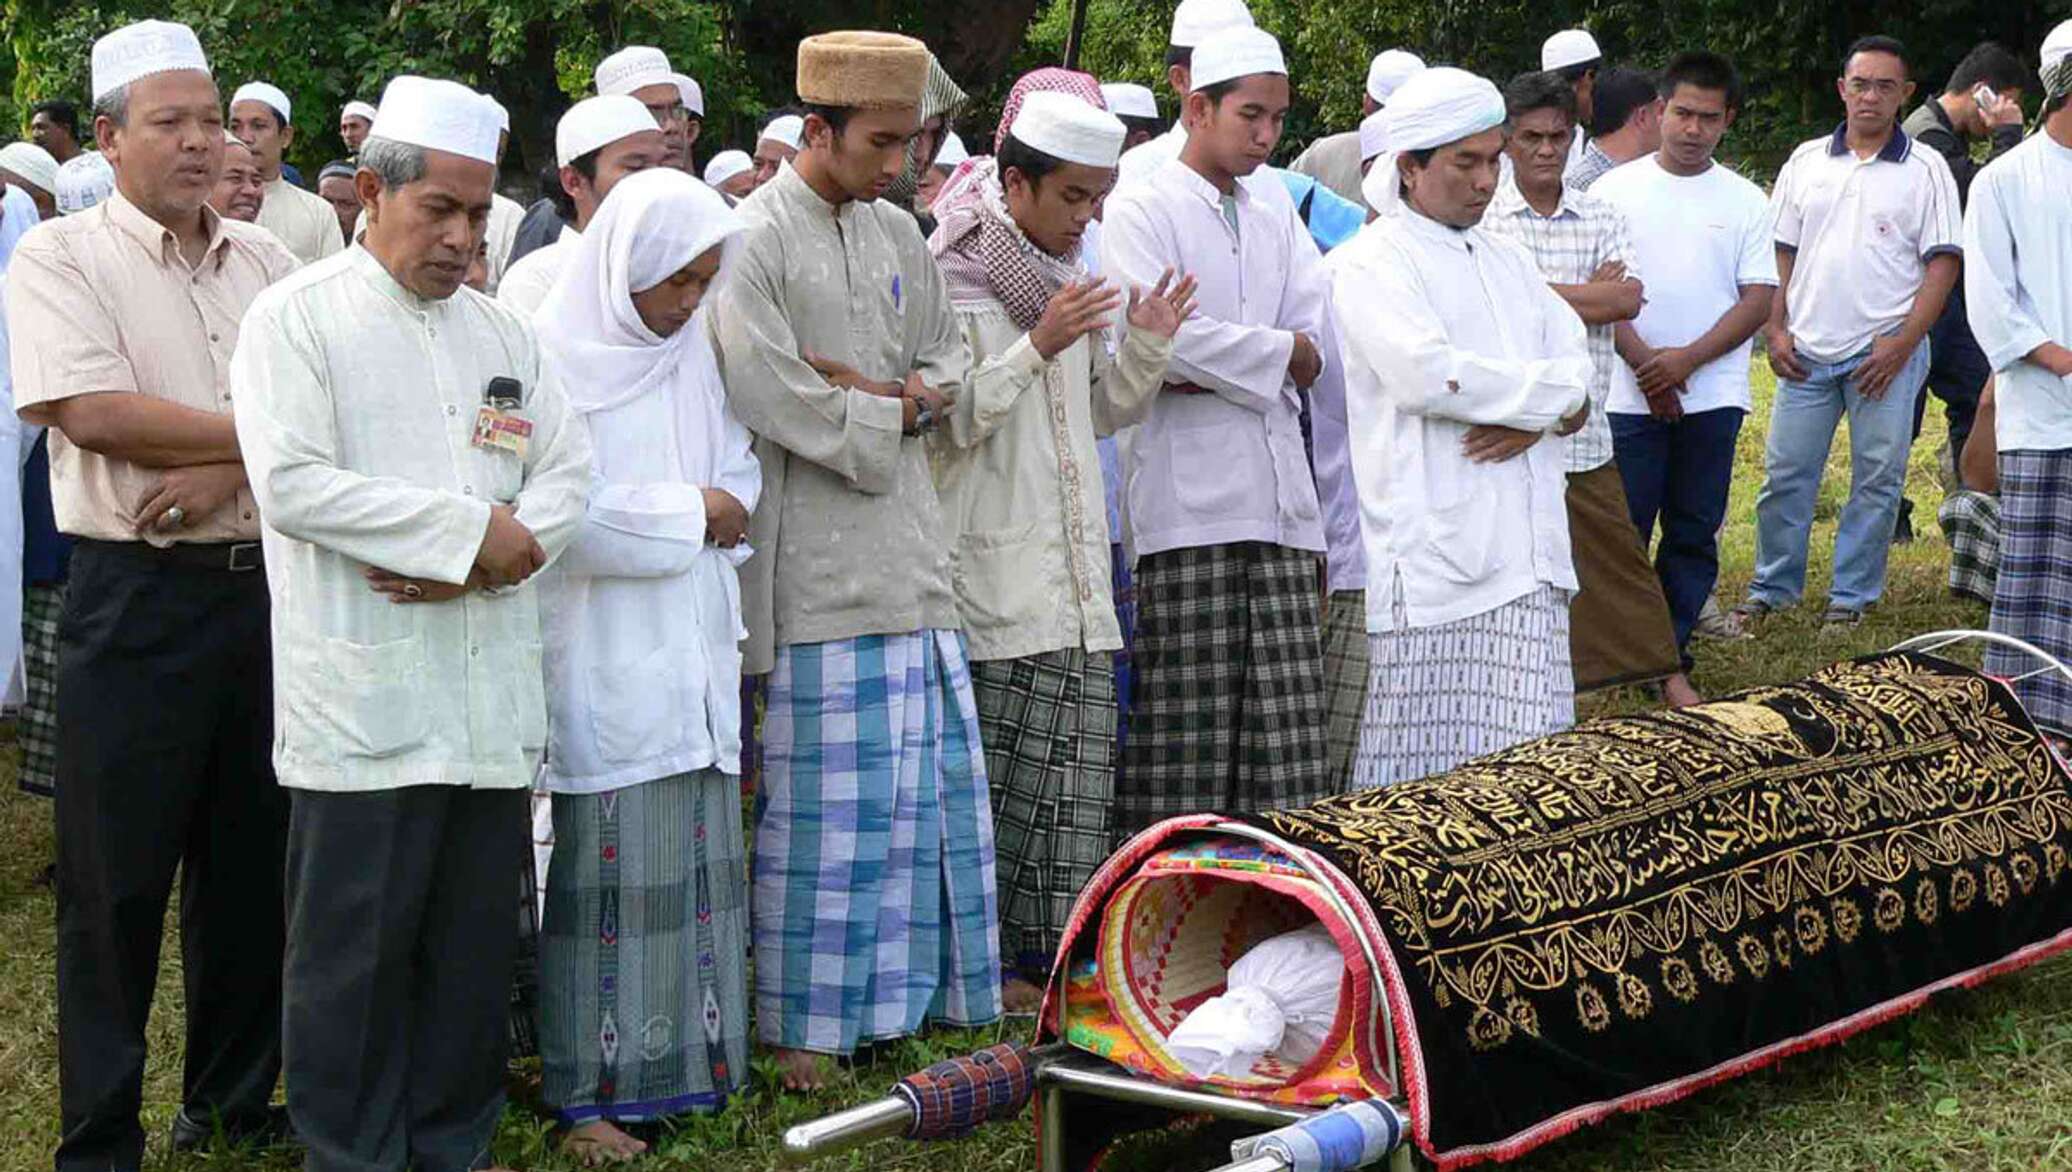 Похорони ислама. Похоронный обряд у мусульман.